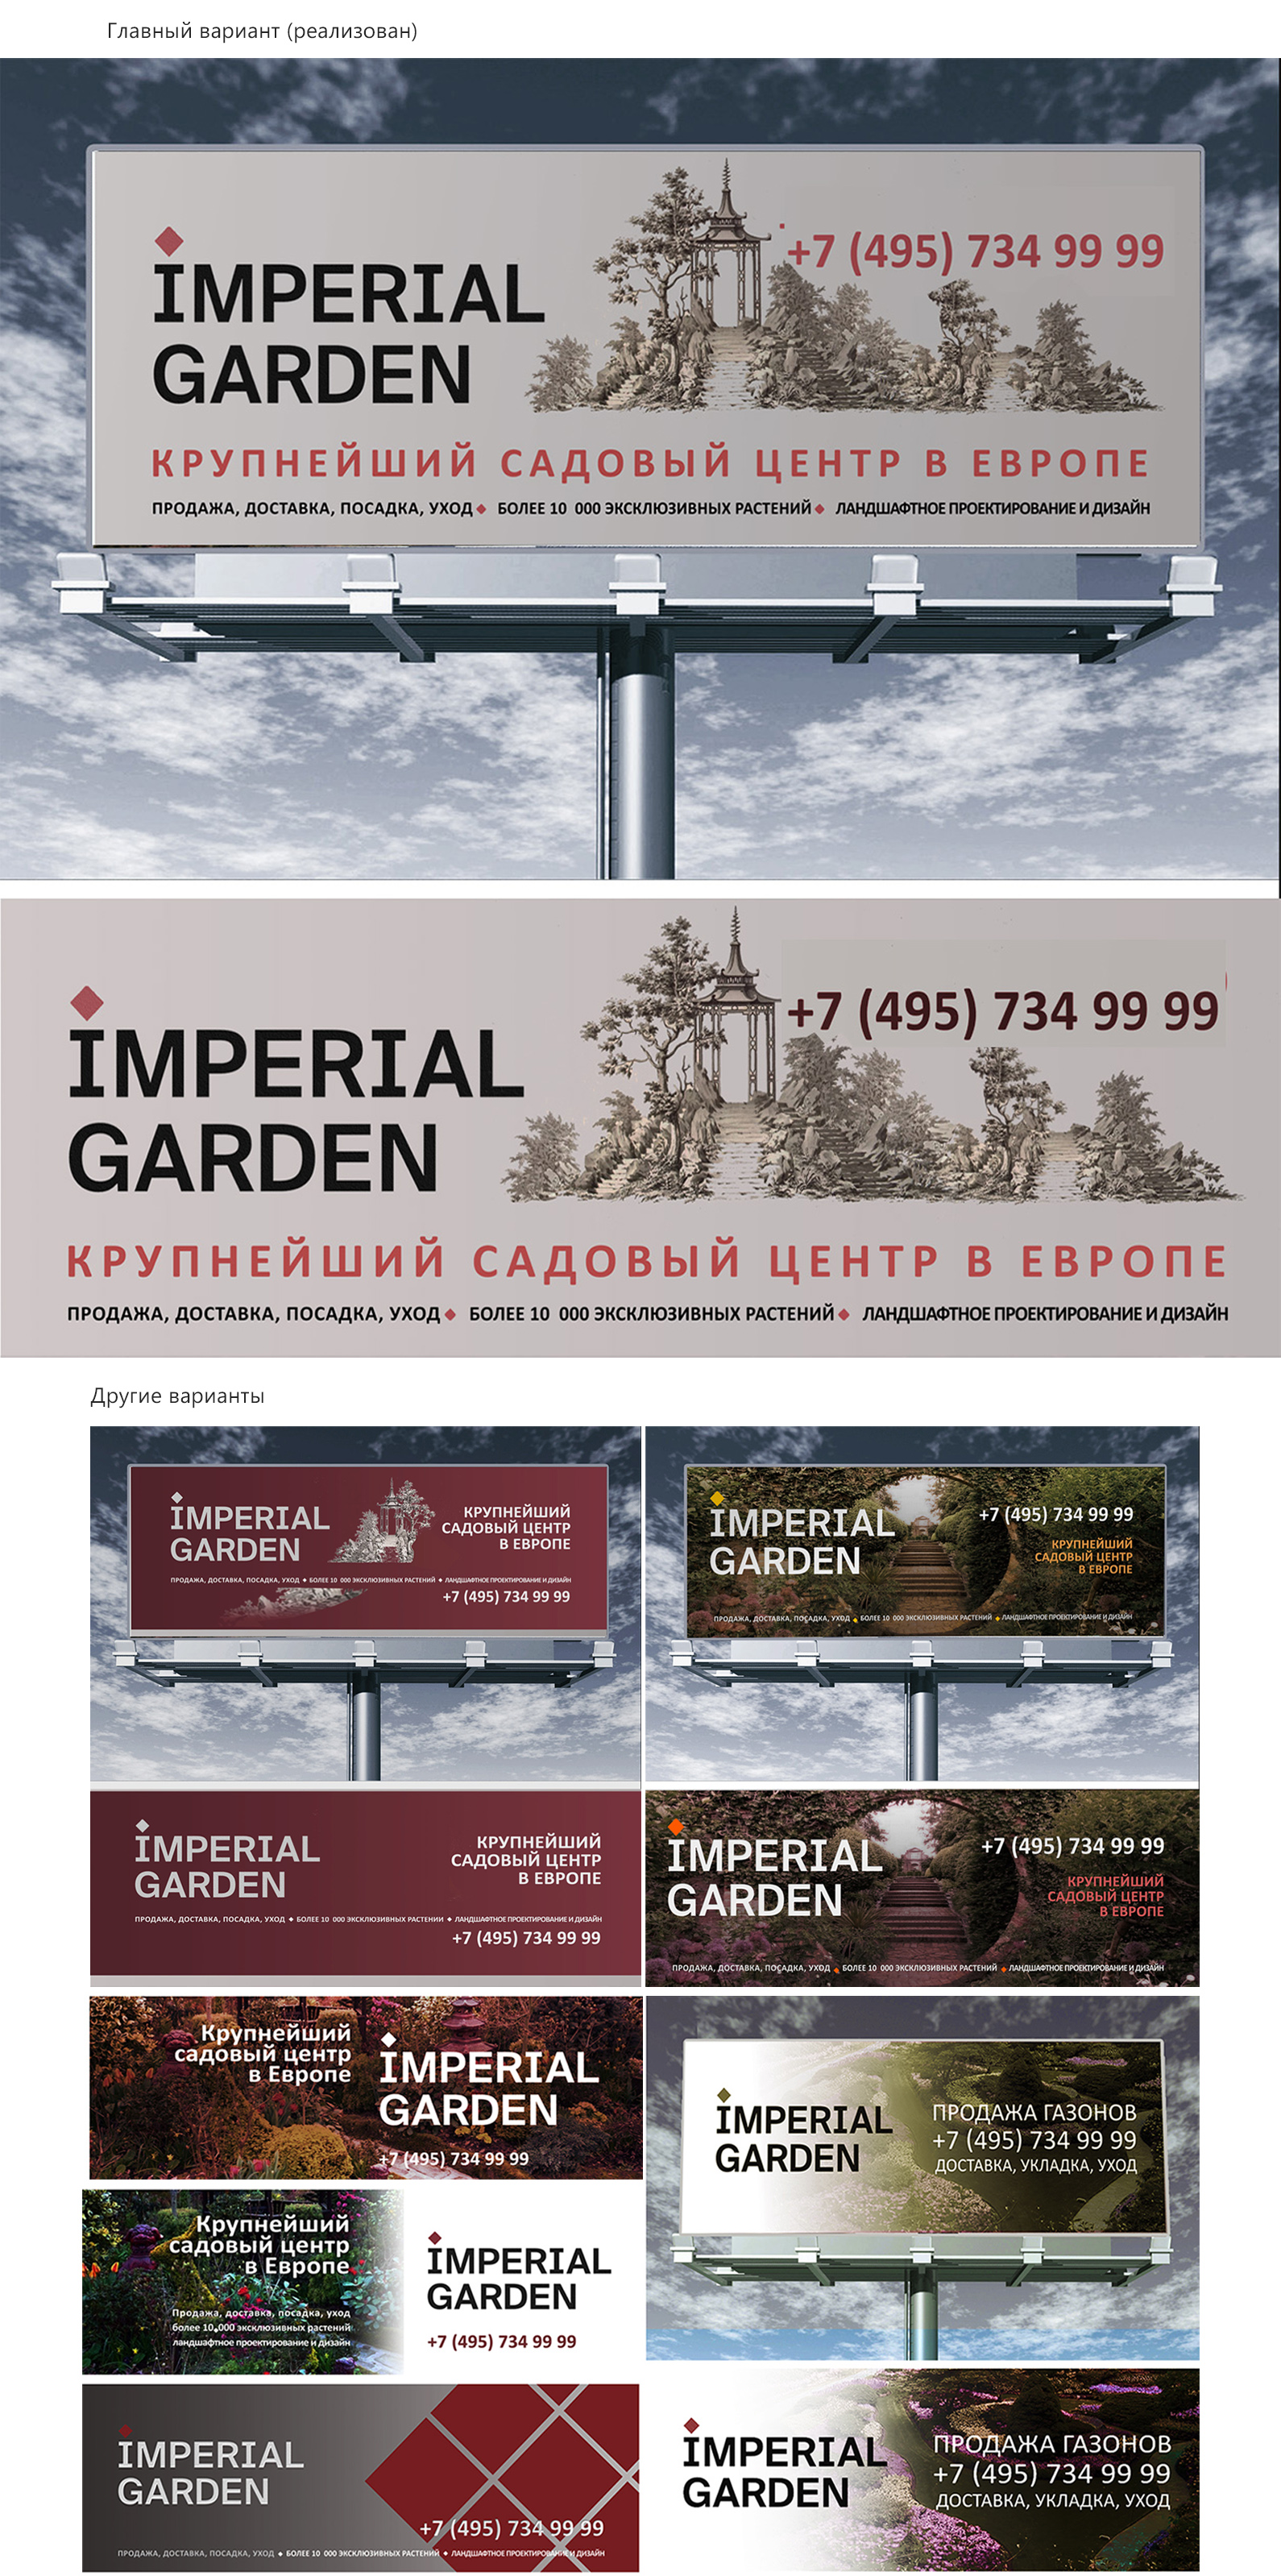  "ImperialGarden". Реклама на  Суперсайтах. Размер: 5,0х15,0 м